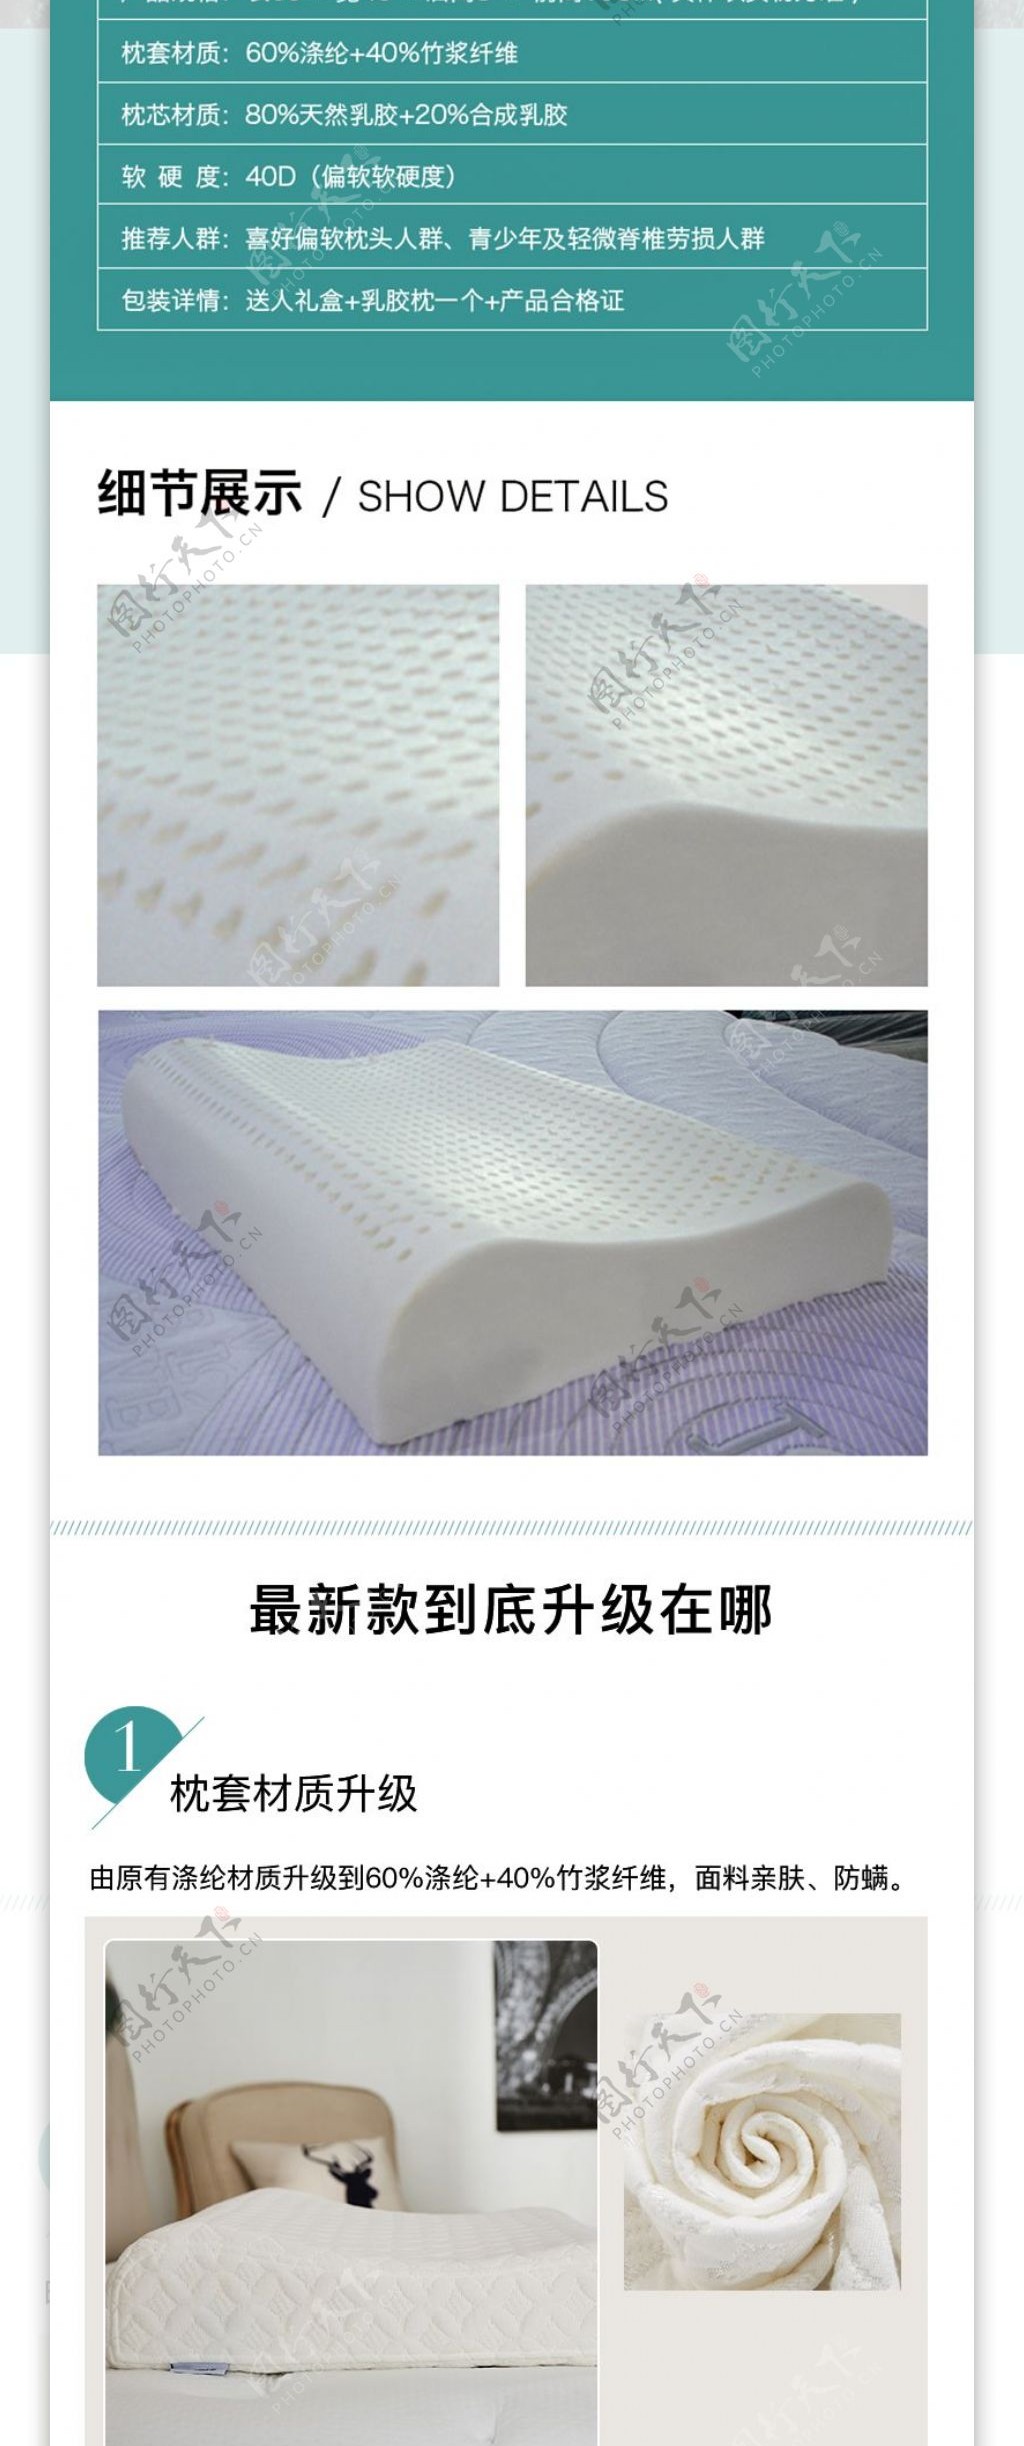 淘宝电商家具用品枕头乳胶枕详情页psd模板